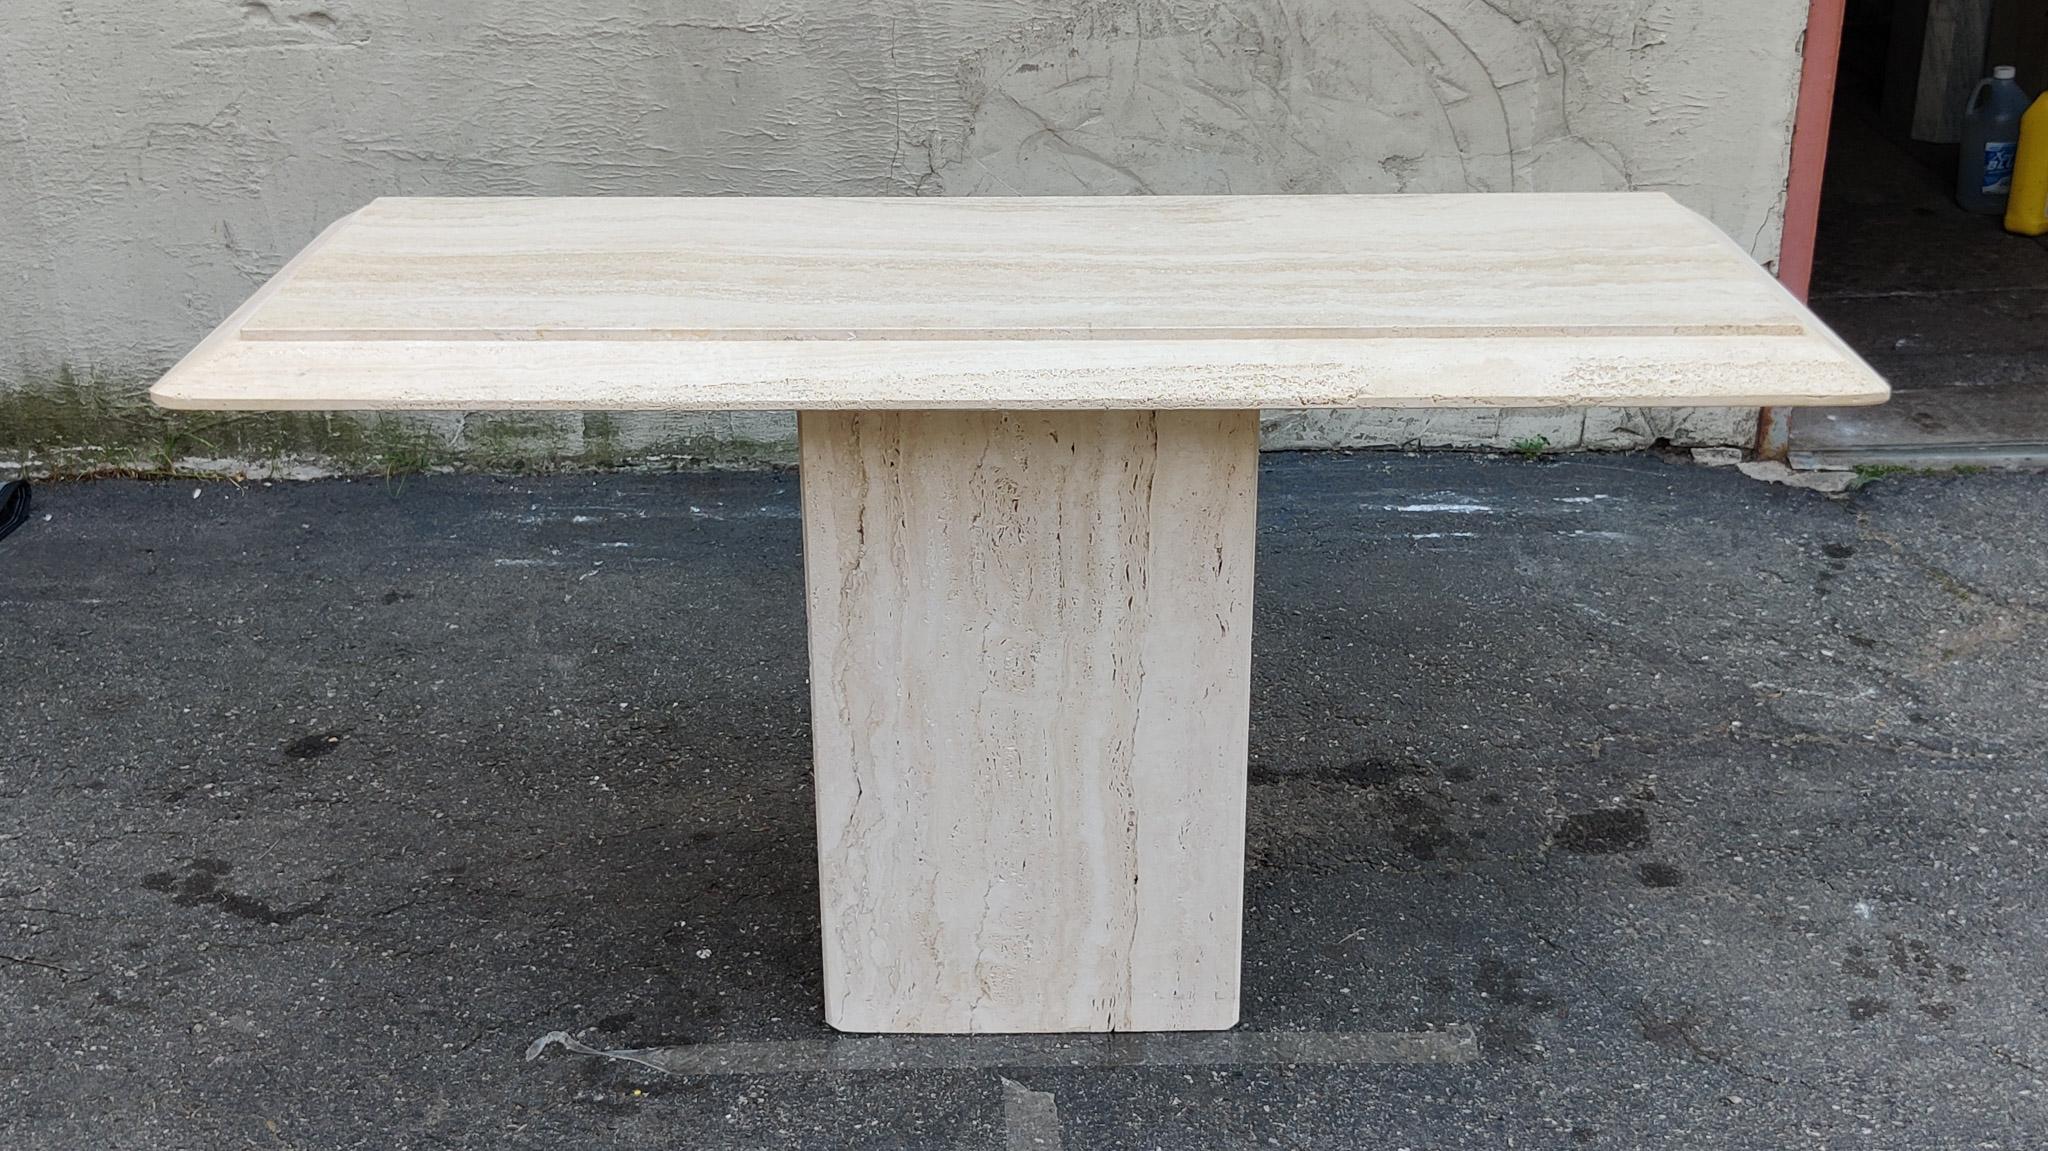 Une étonnante table console italienne avec des bordures en travertin naturel et poreux. La simplicité du design et des traitements de surface est ce qui fait de cette table un exemple classique de design minimaliste italien fort et stoïque,